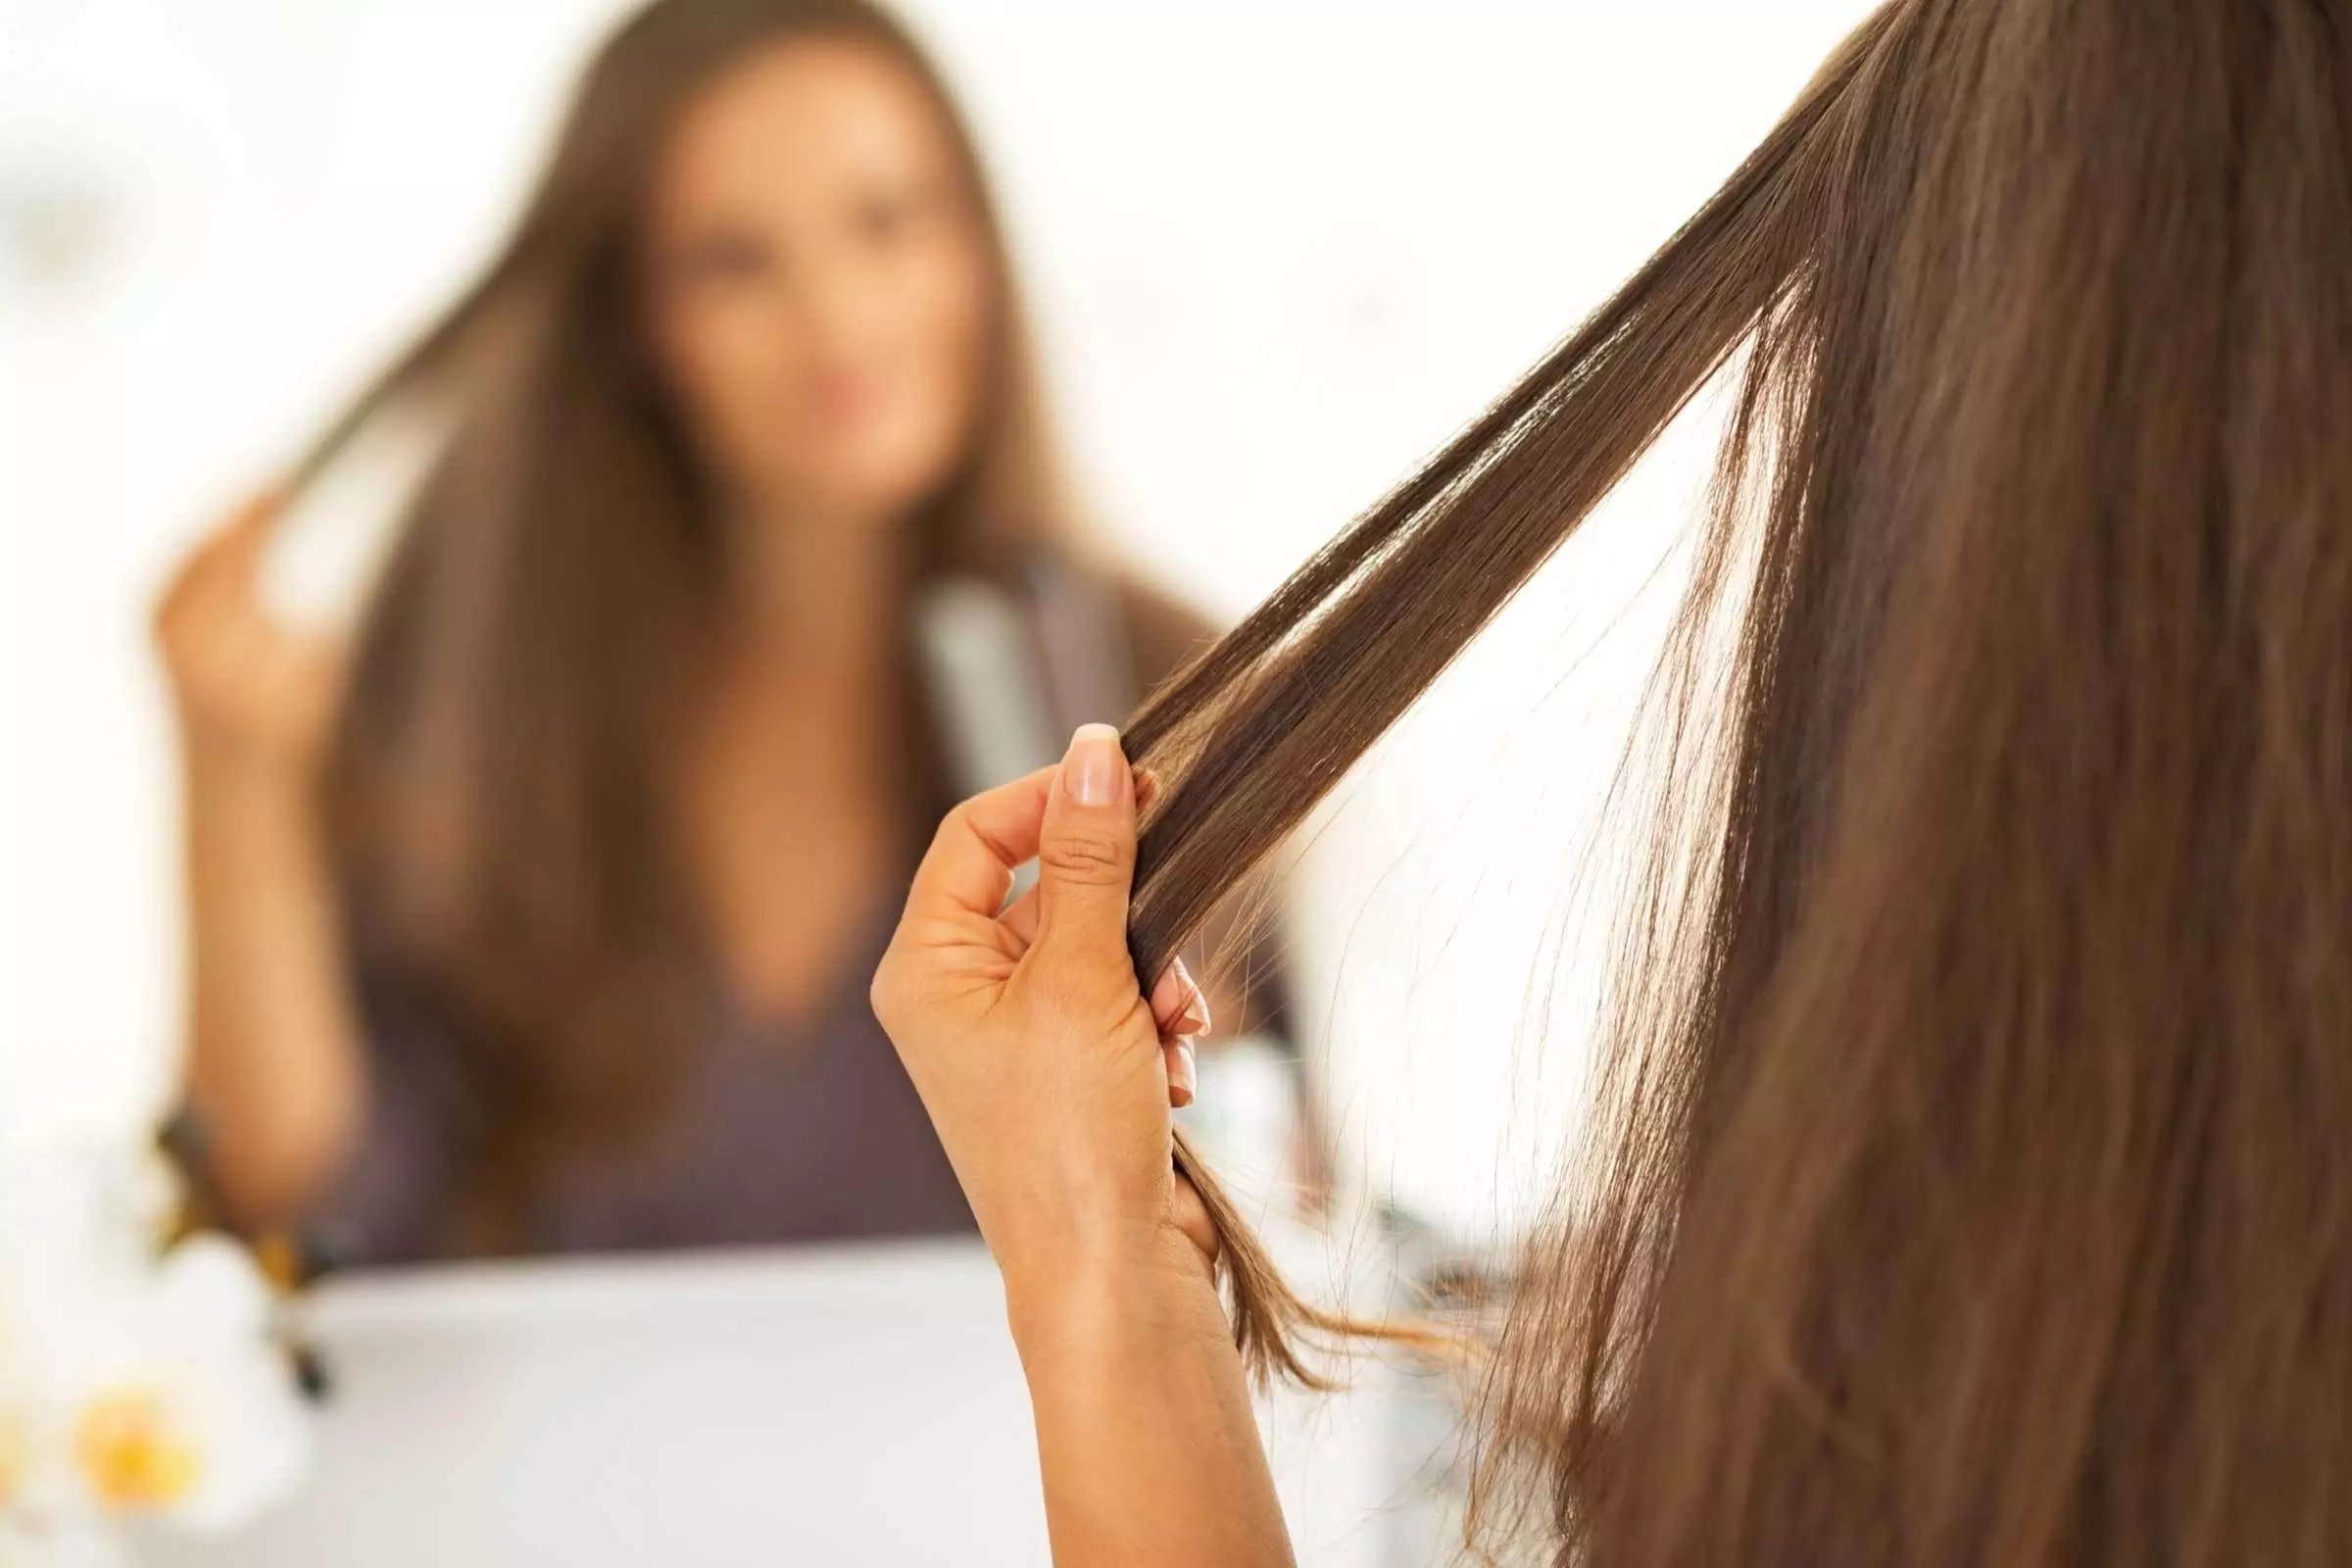 Как сделать шелковистые волосы в домашних условиях